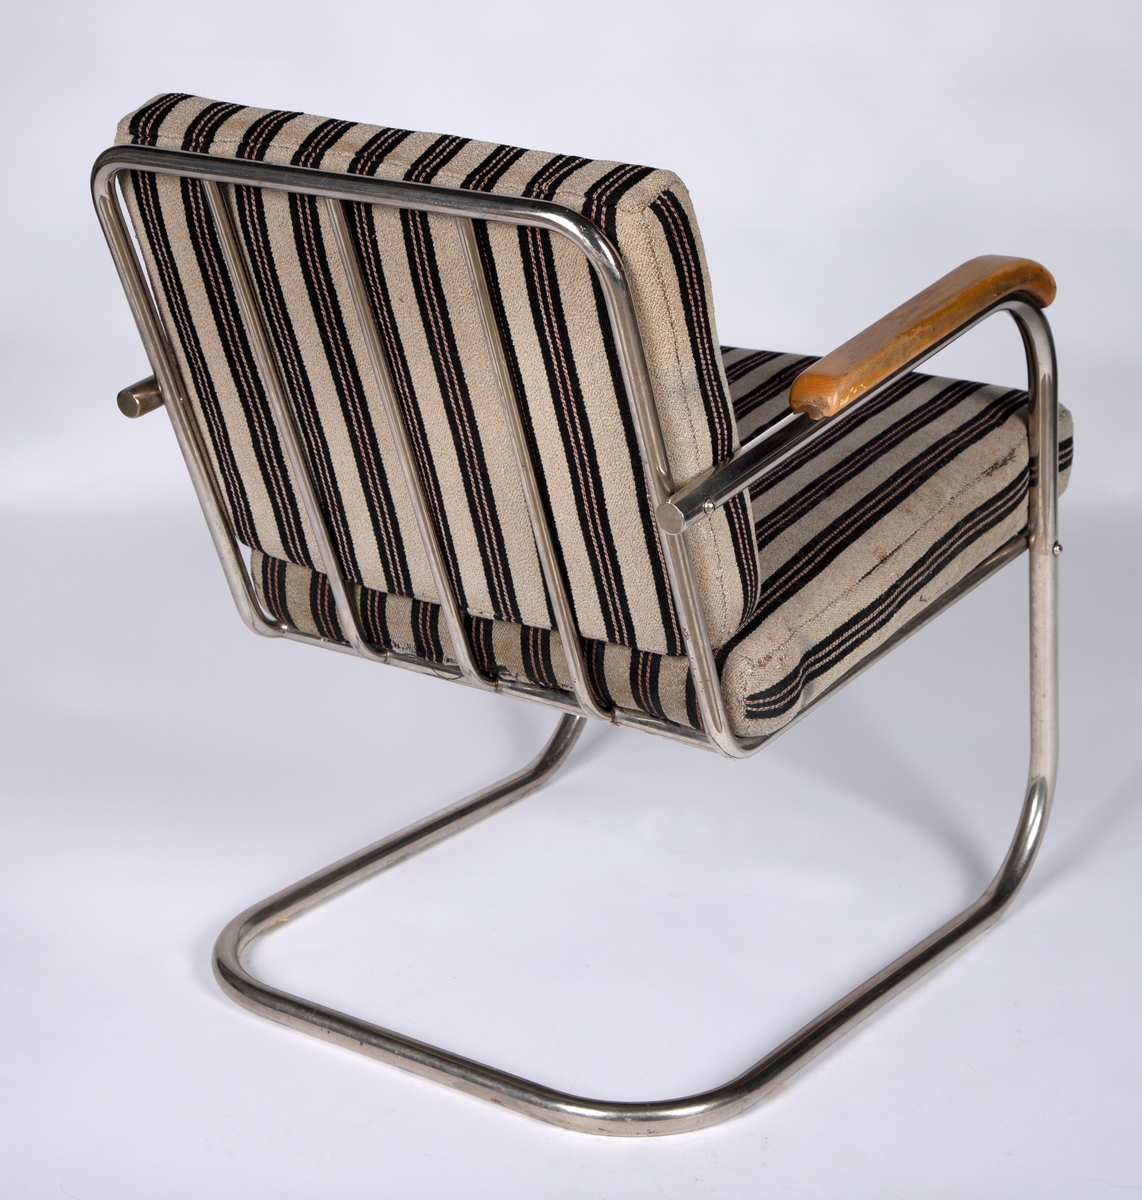 Stålrørslenestol med armlener i bjørk. Stolen er satt sammen av to stålrørselementer. Ben og lener er ett element og sete og rygg er ett element. Festepunkt midt på ryggen og foran på setet. Tre stålrørssprosser i ryggen og fjæring i sete. Gråbrunt møbeltrekk med vertikale brede, svarte striper som har to parallelle rader med smale vertikale striper. Disse er gråbrune med stiplete røde striper.